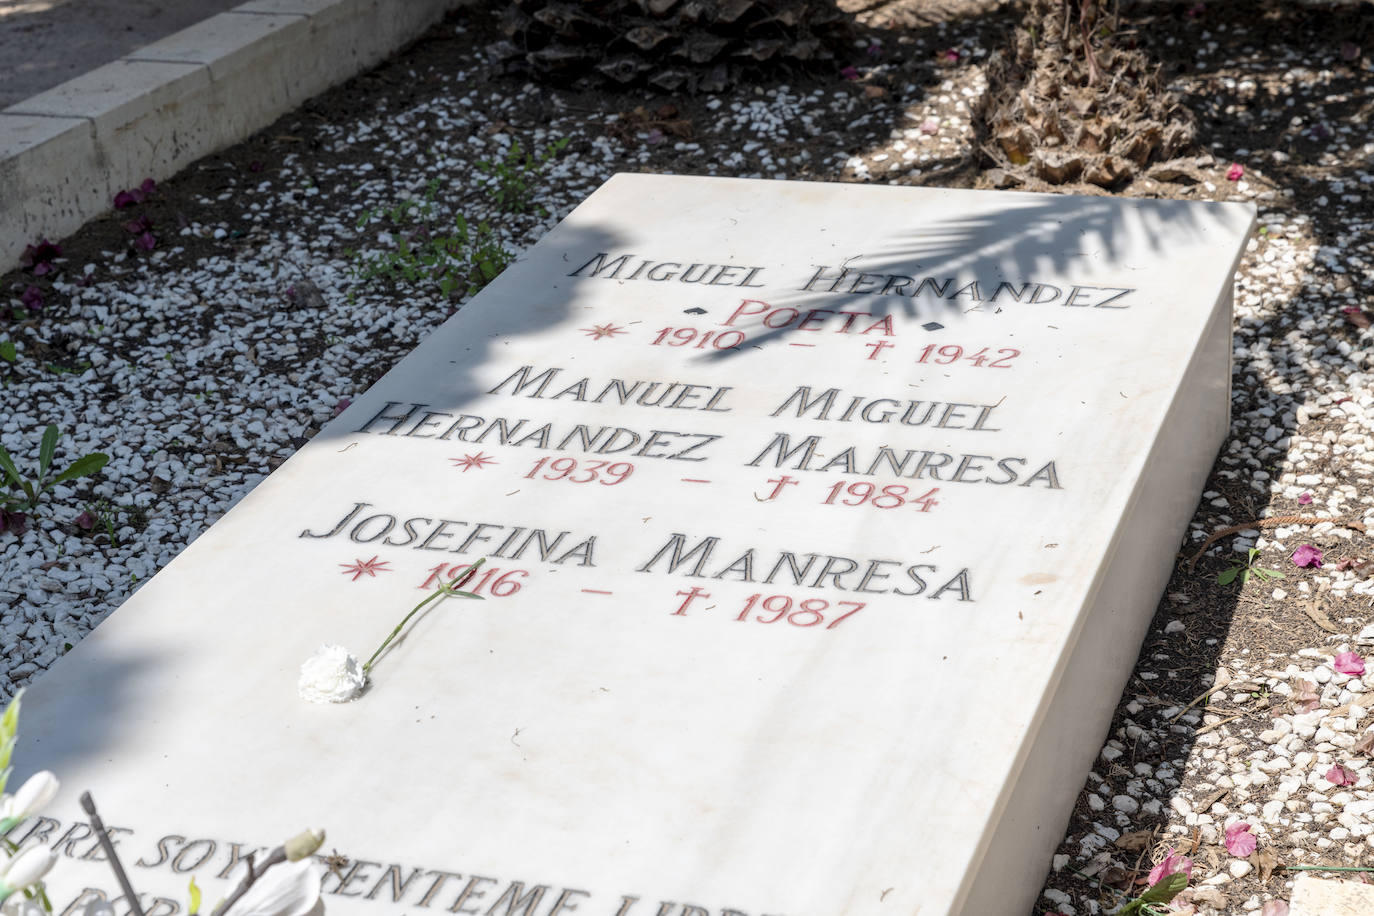 Imagen secundaria 2 - Tumba de Miguel Hernández en el cementerio alicantino.